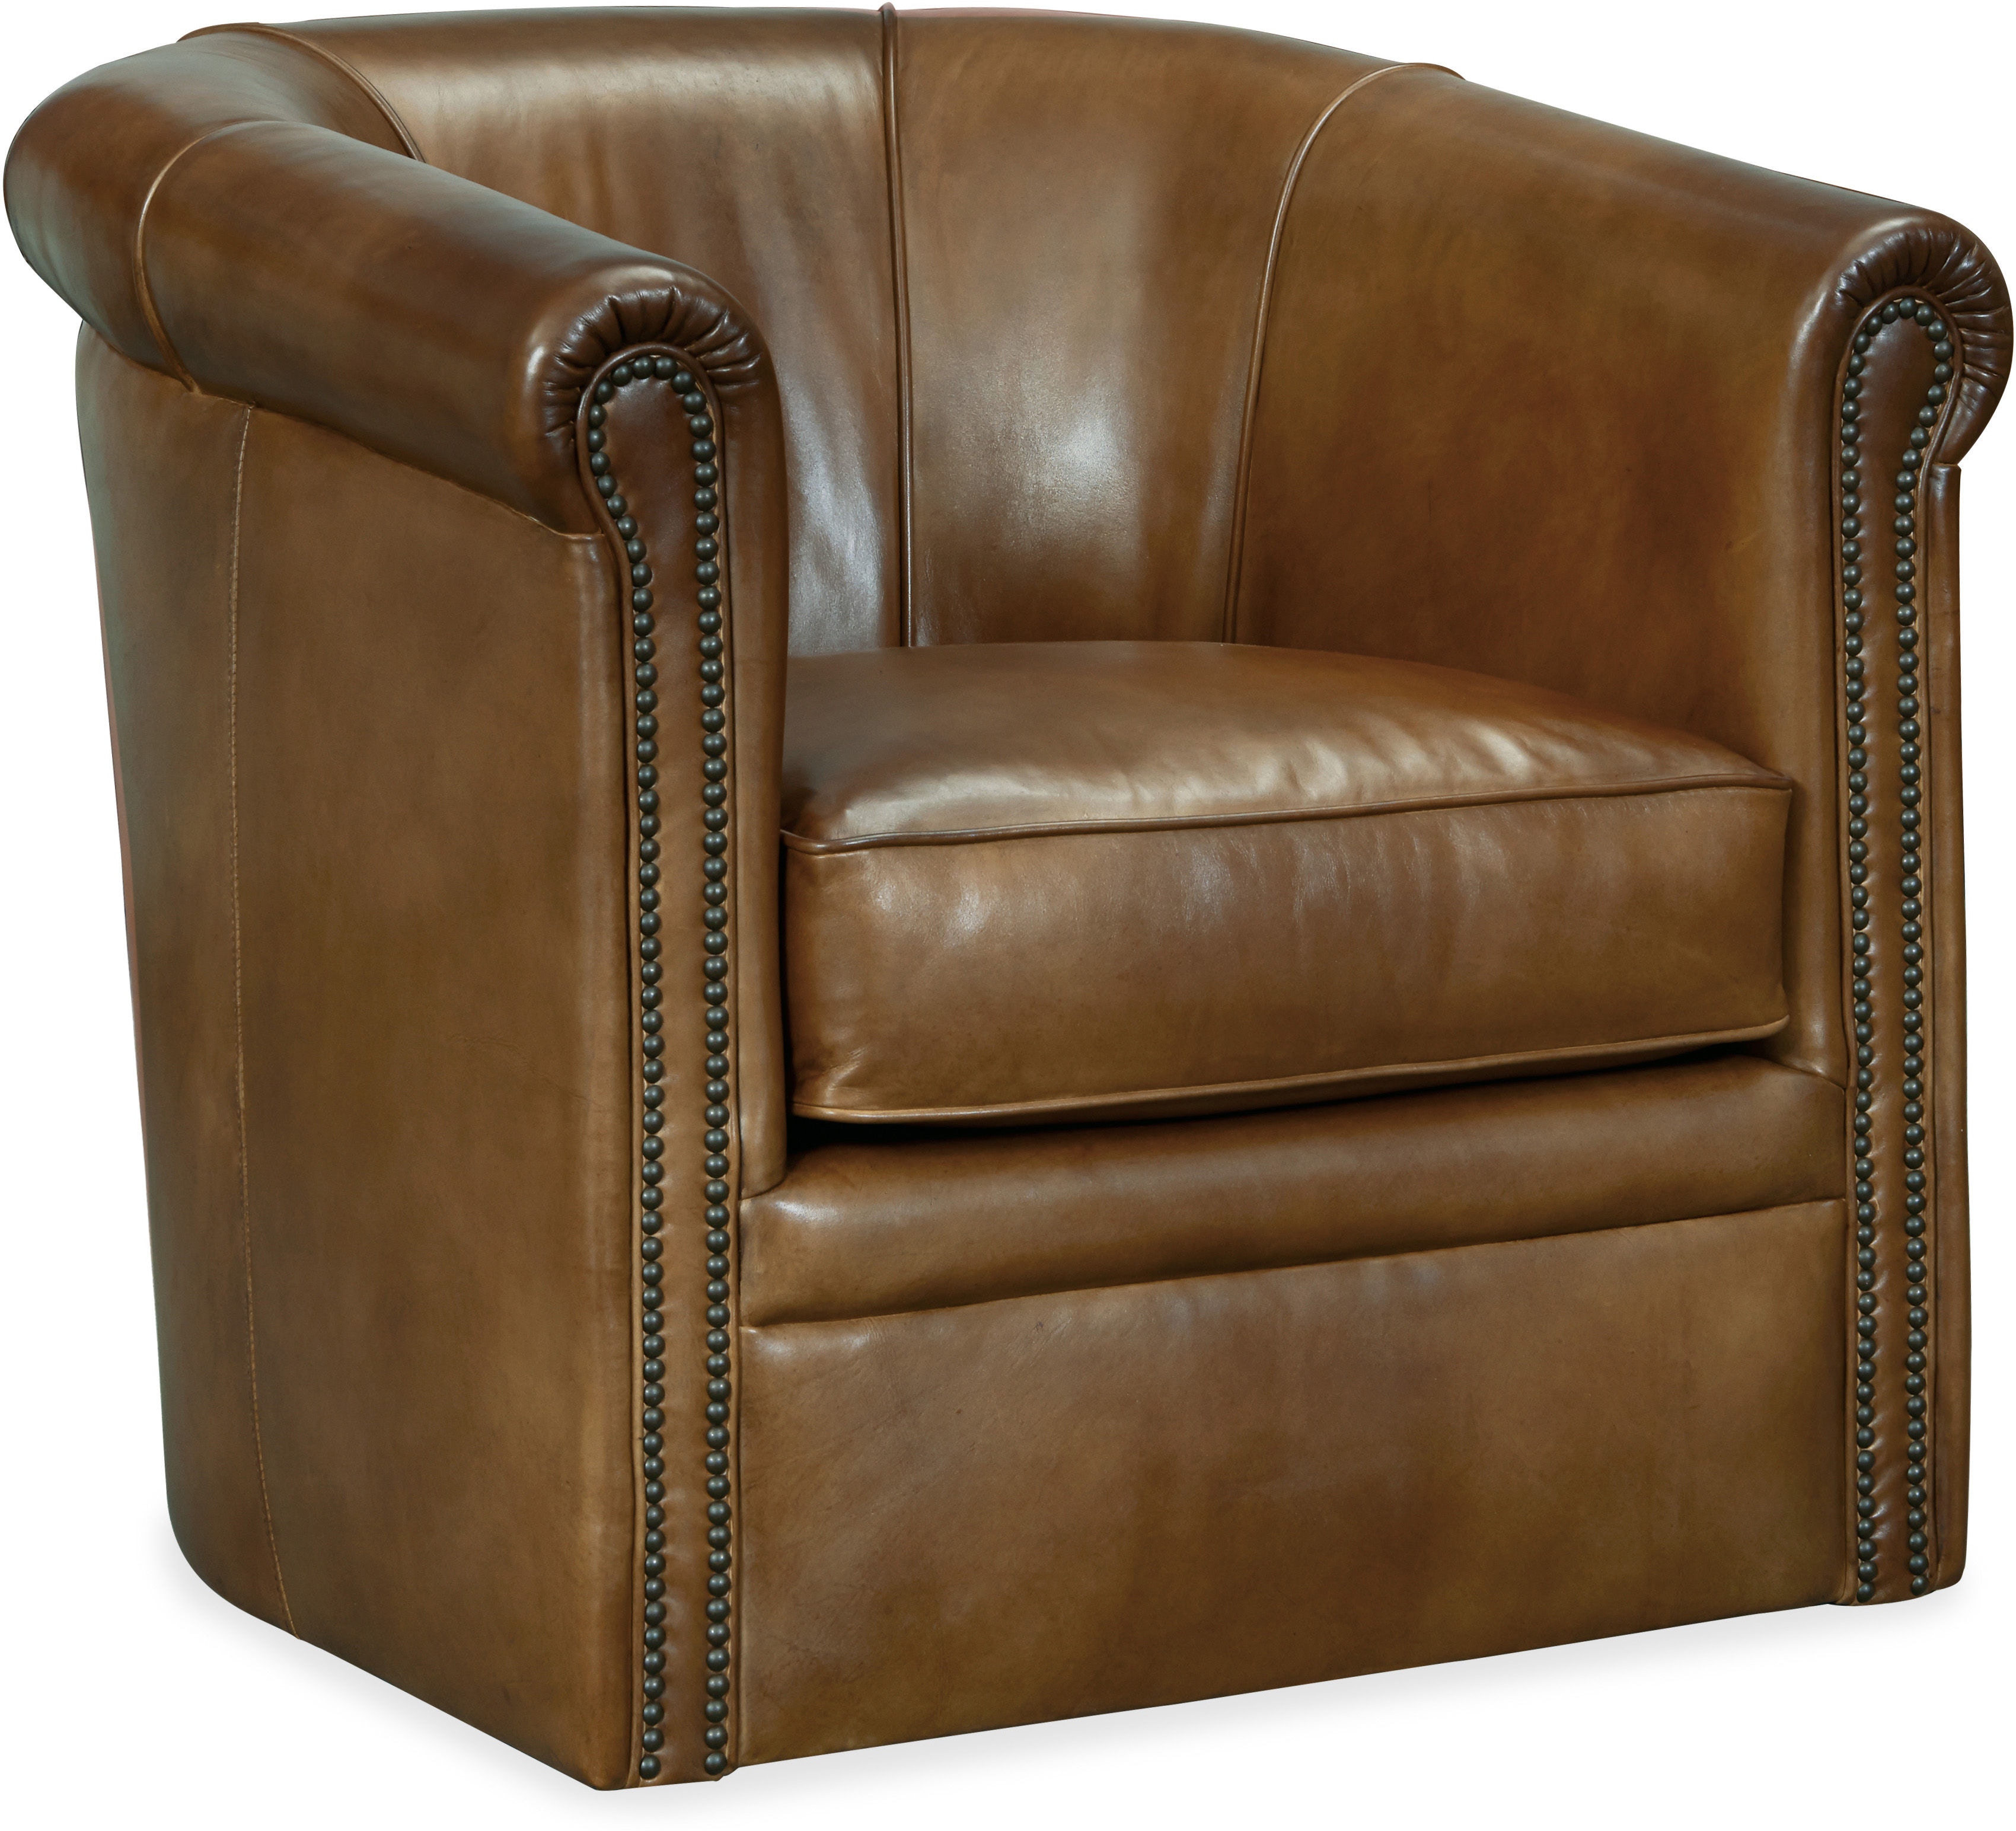 Club Chairs  Club chairs, Leather chair, Furniture chair